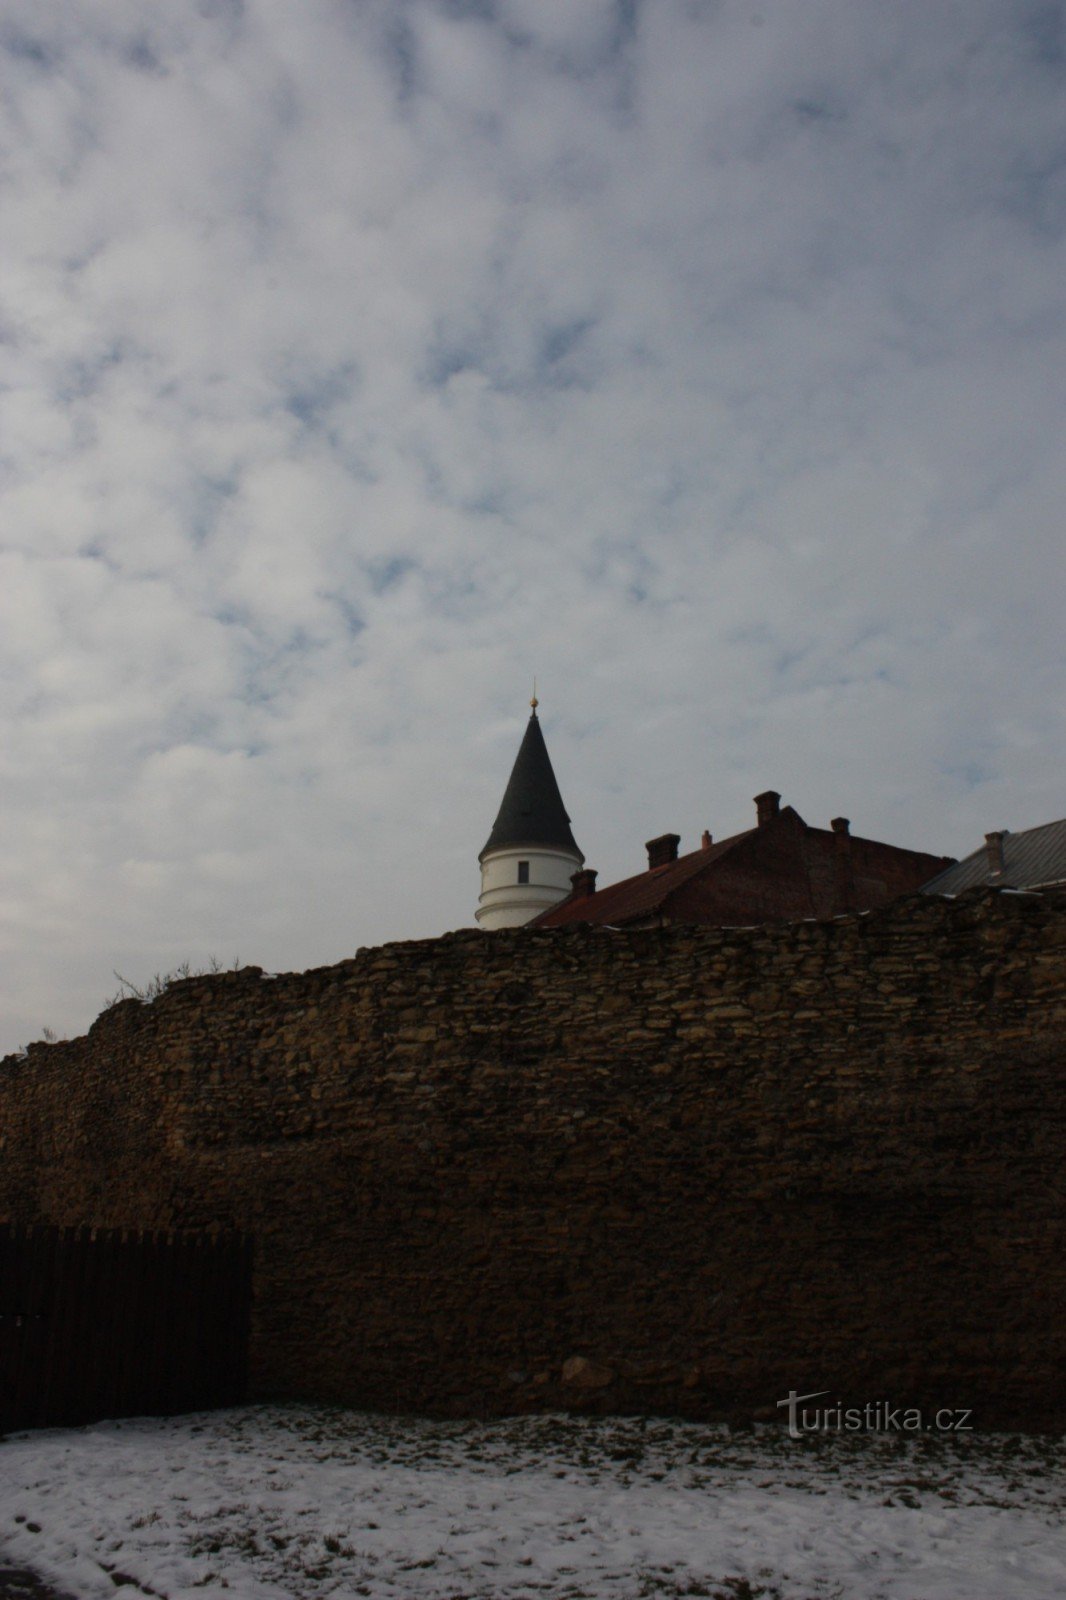 Resti del sistema di fortificazione del XV secolo a Přerov